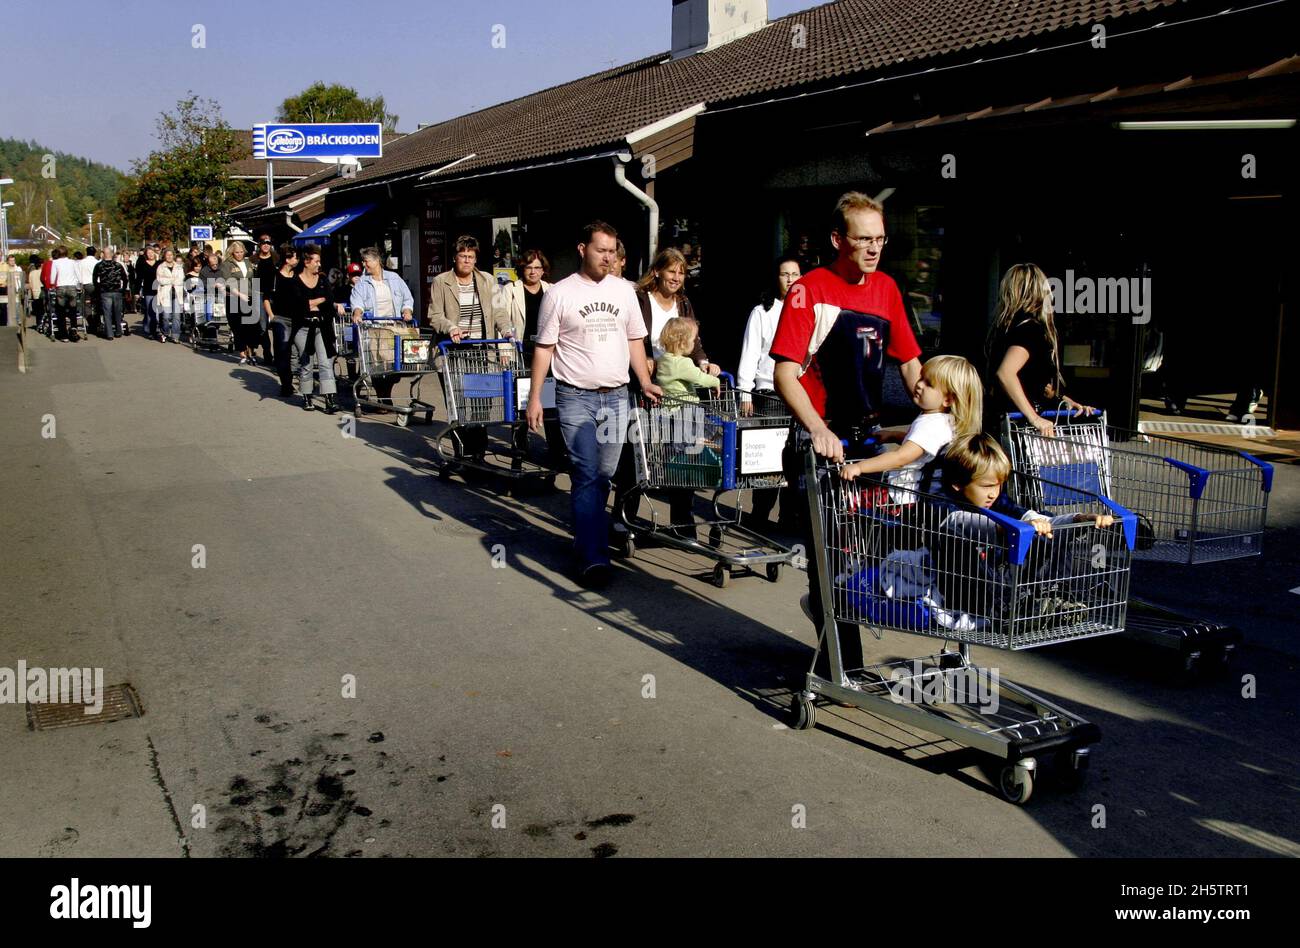 The department store Gekås in Ullared, Sweden. Long queue outside the department store. Stock Photo